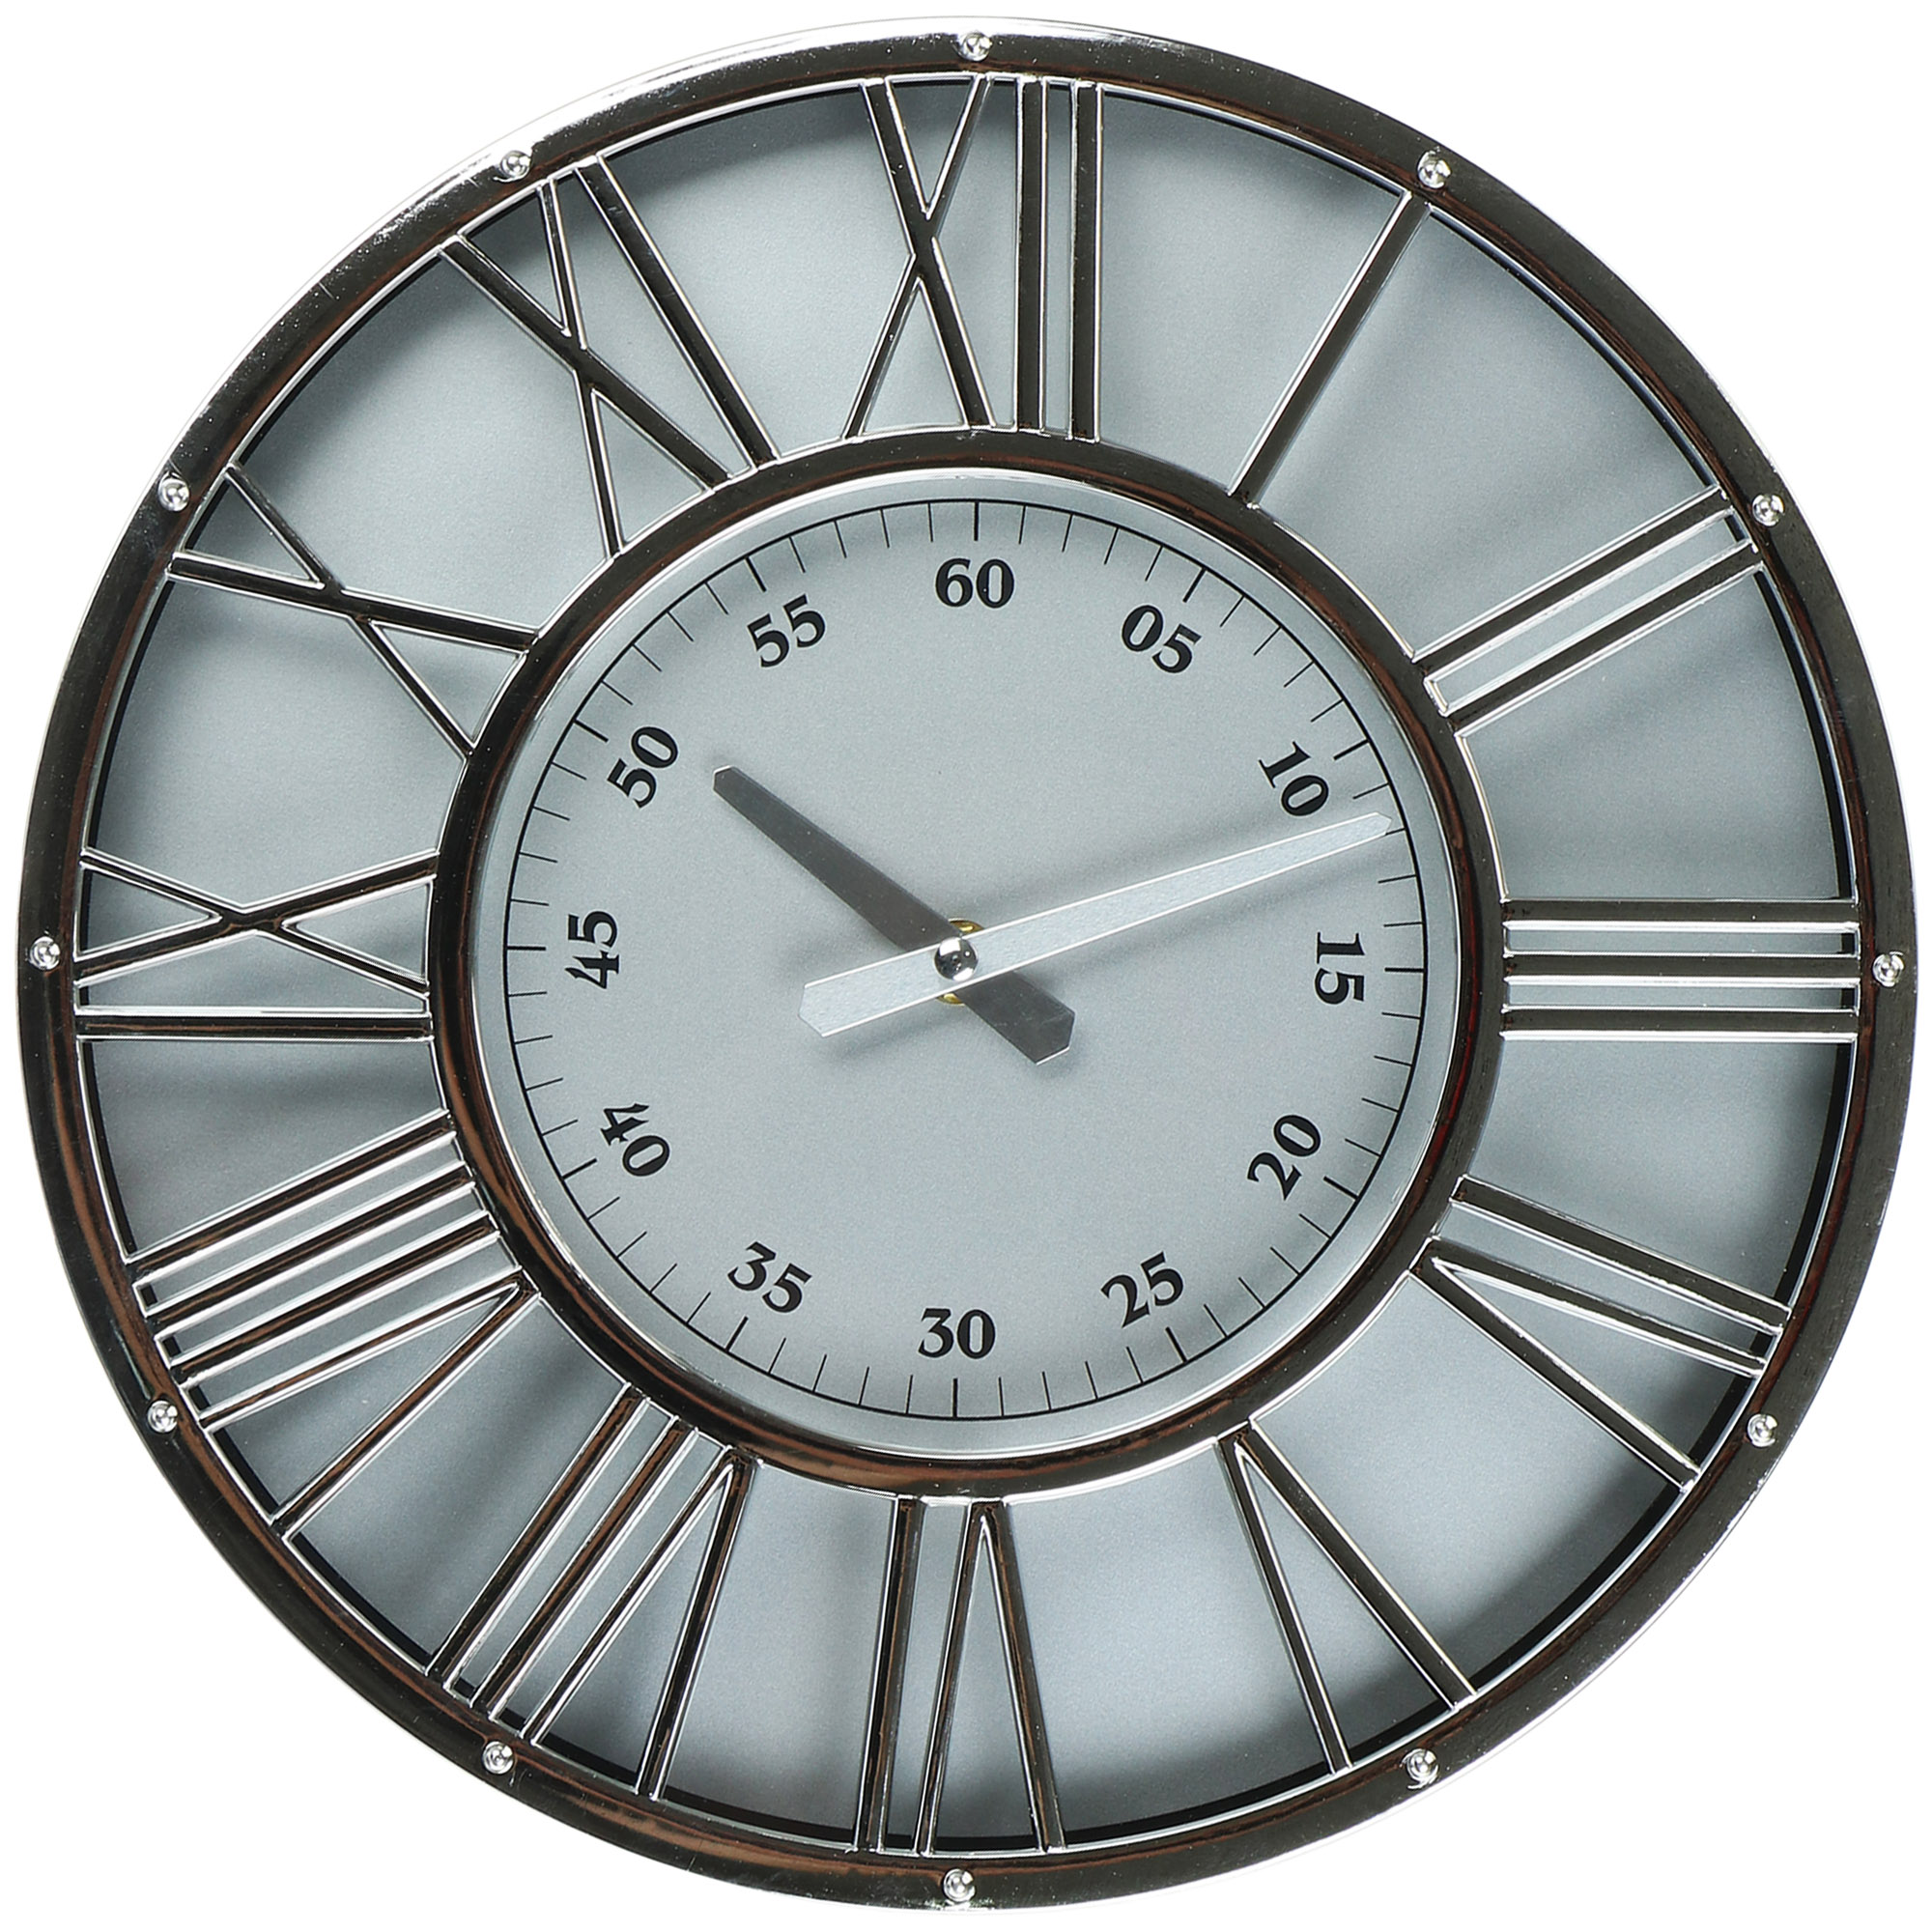 Часы настенные Kanglijia Clock серебряные 30,4х4,1х30,4 см часы настенные электронные будильник календарь термометр гигрометр 1 cr2032 d 25 см